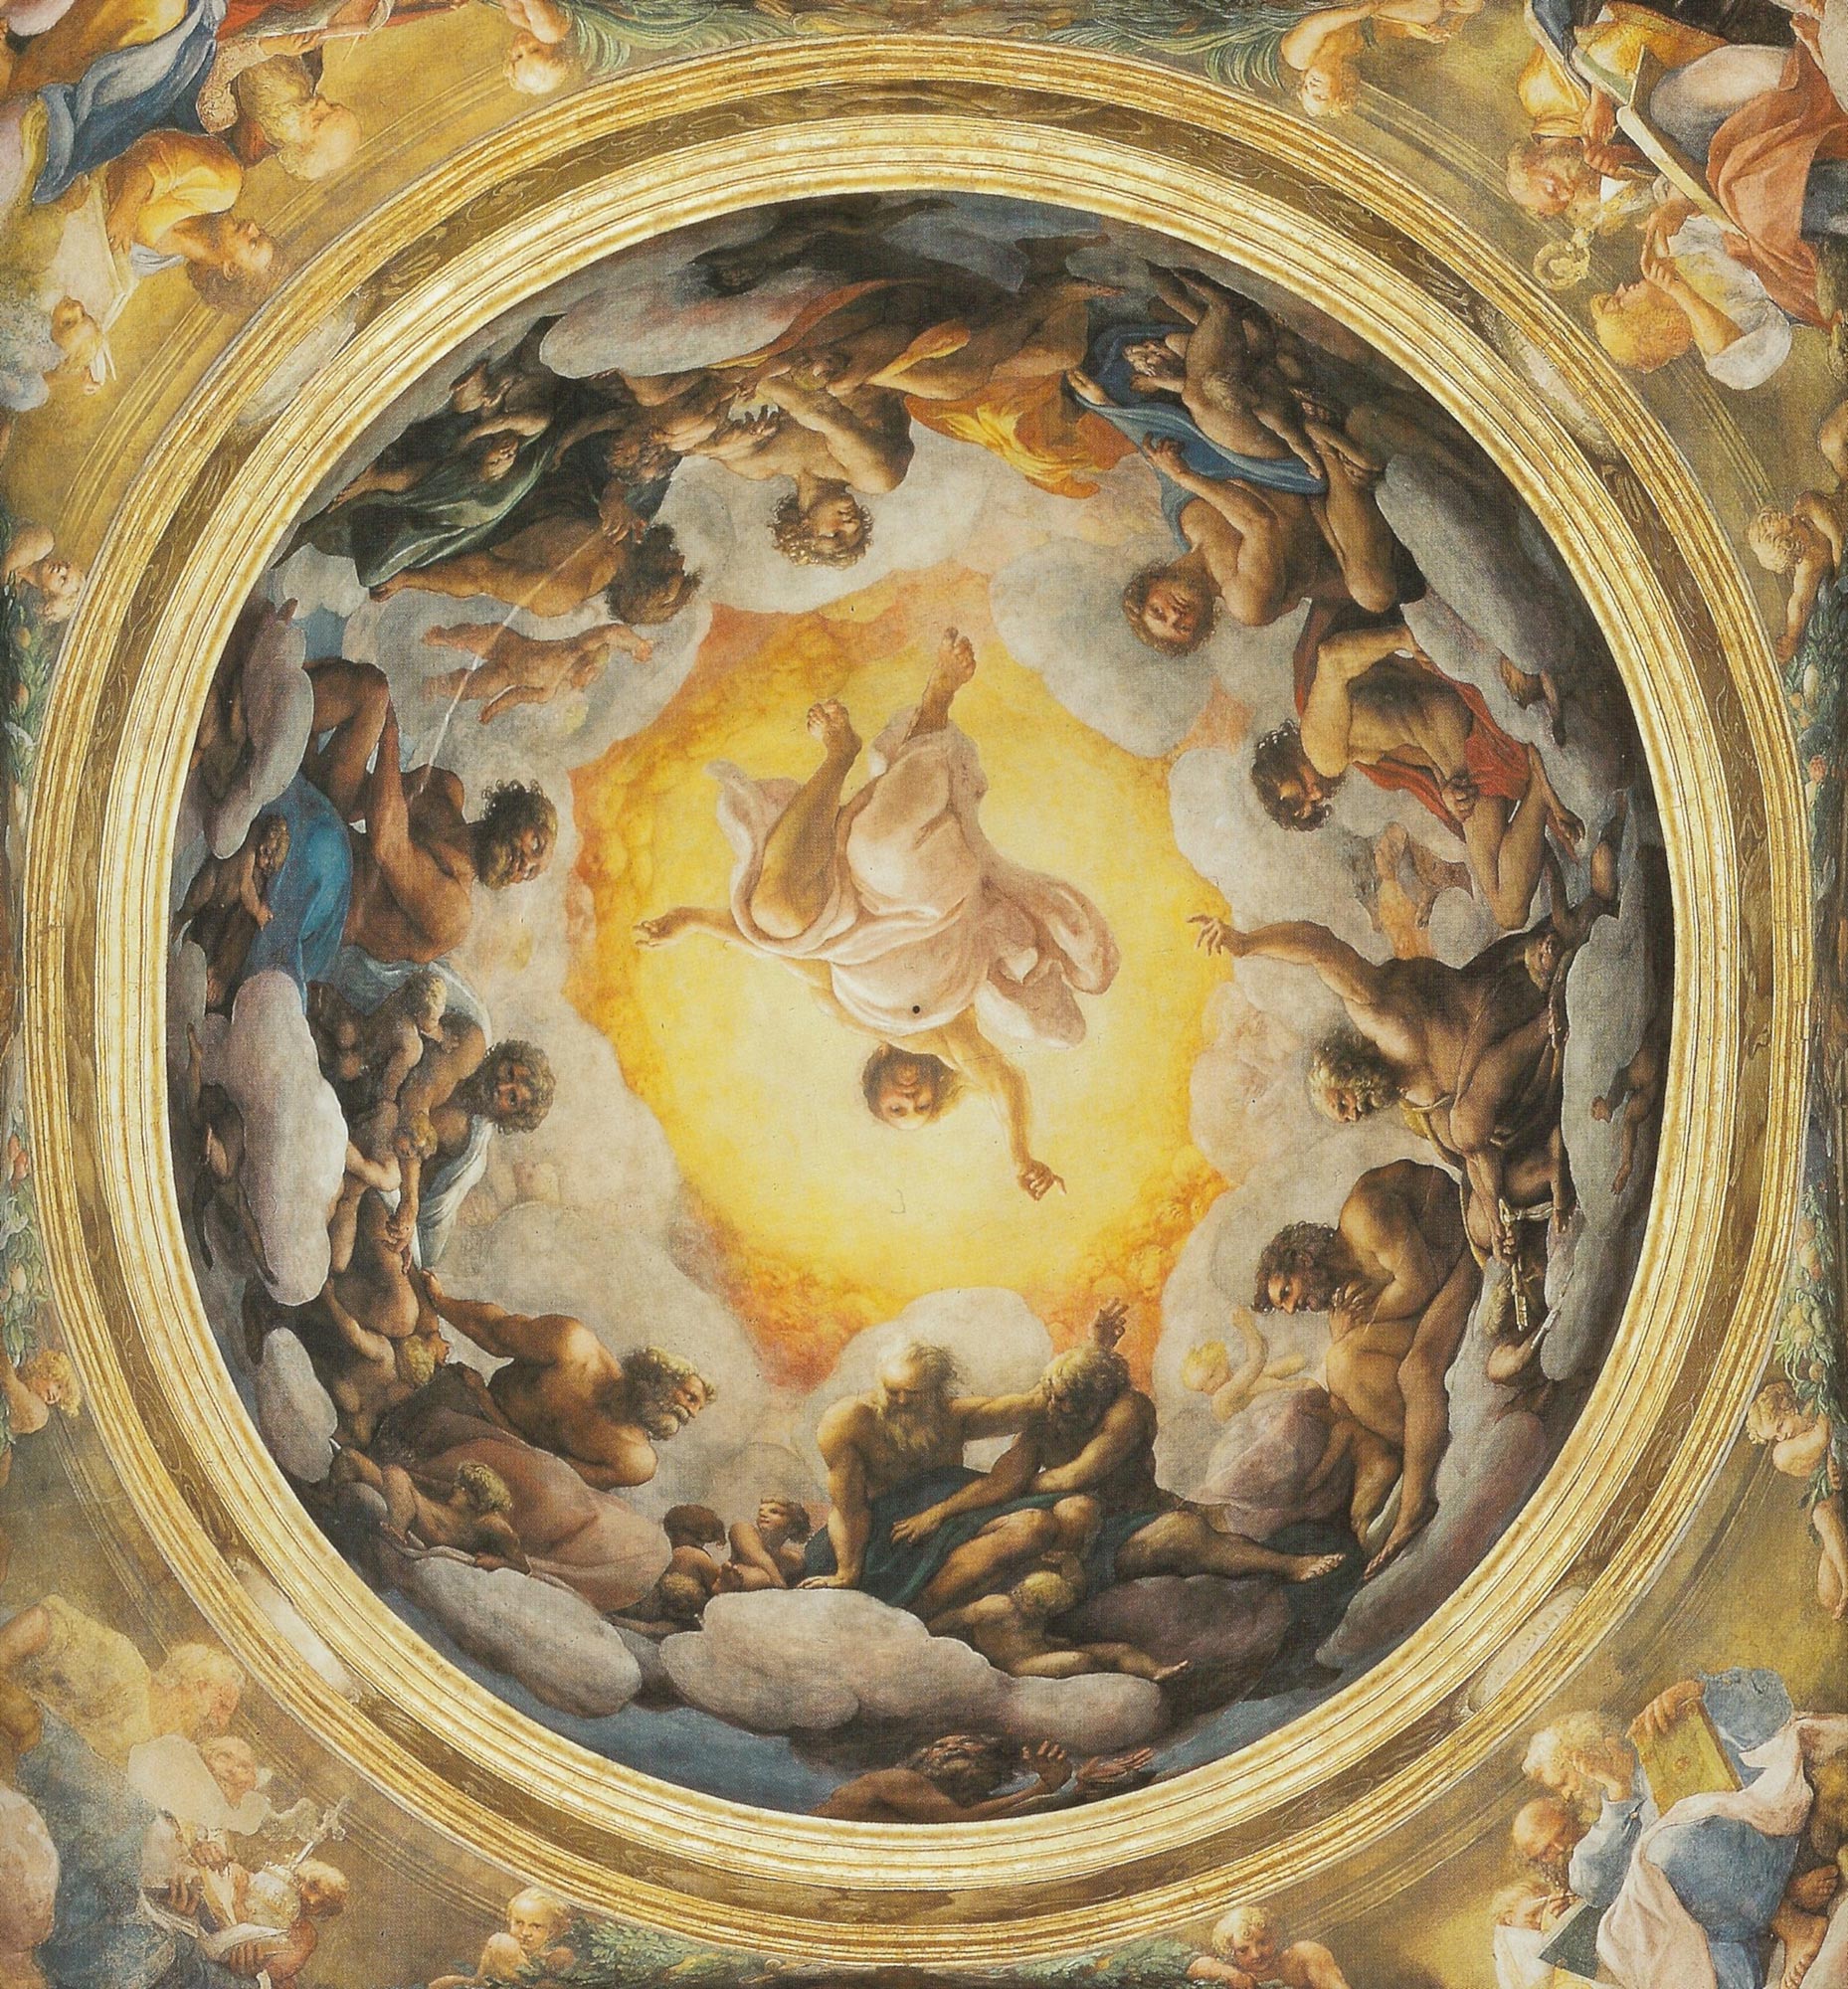 Correggio. L'affresco della cupola della Basilica di San Giovanni in Parma (1520) dove si coglie l'imponente ruolo circuitale degli Apostoli, necessariamente nudi perchÃ© gloriosi. Qui GesÃ¹ chiama San Giovanni, posto sotto le nubi.
